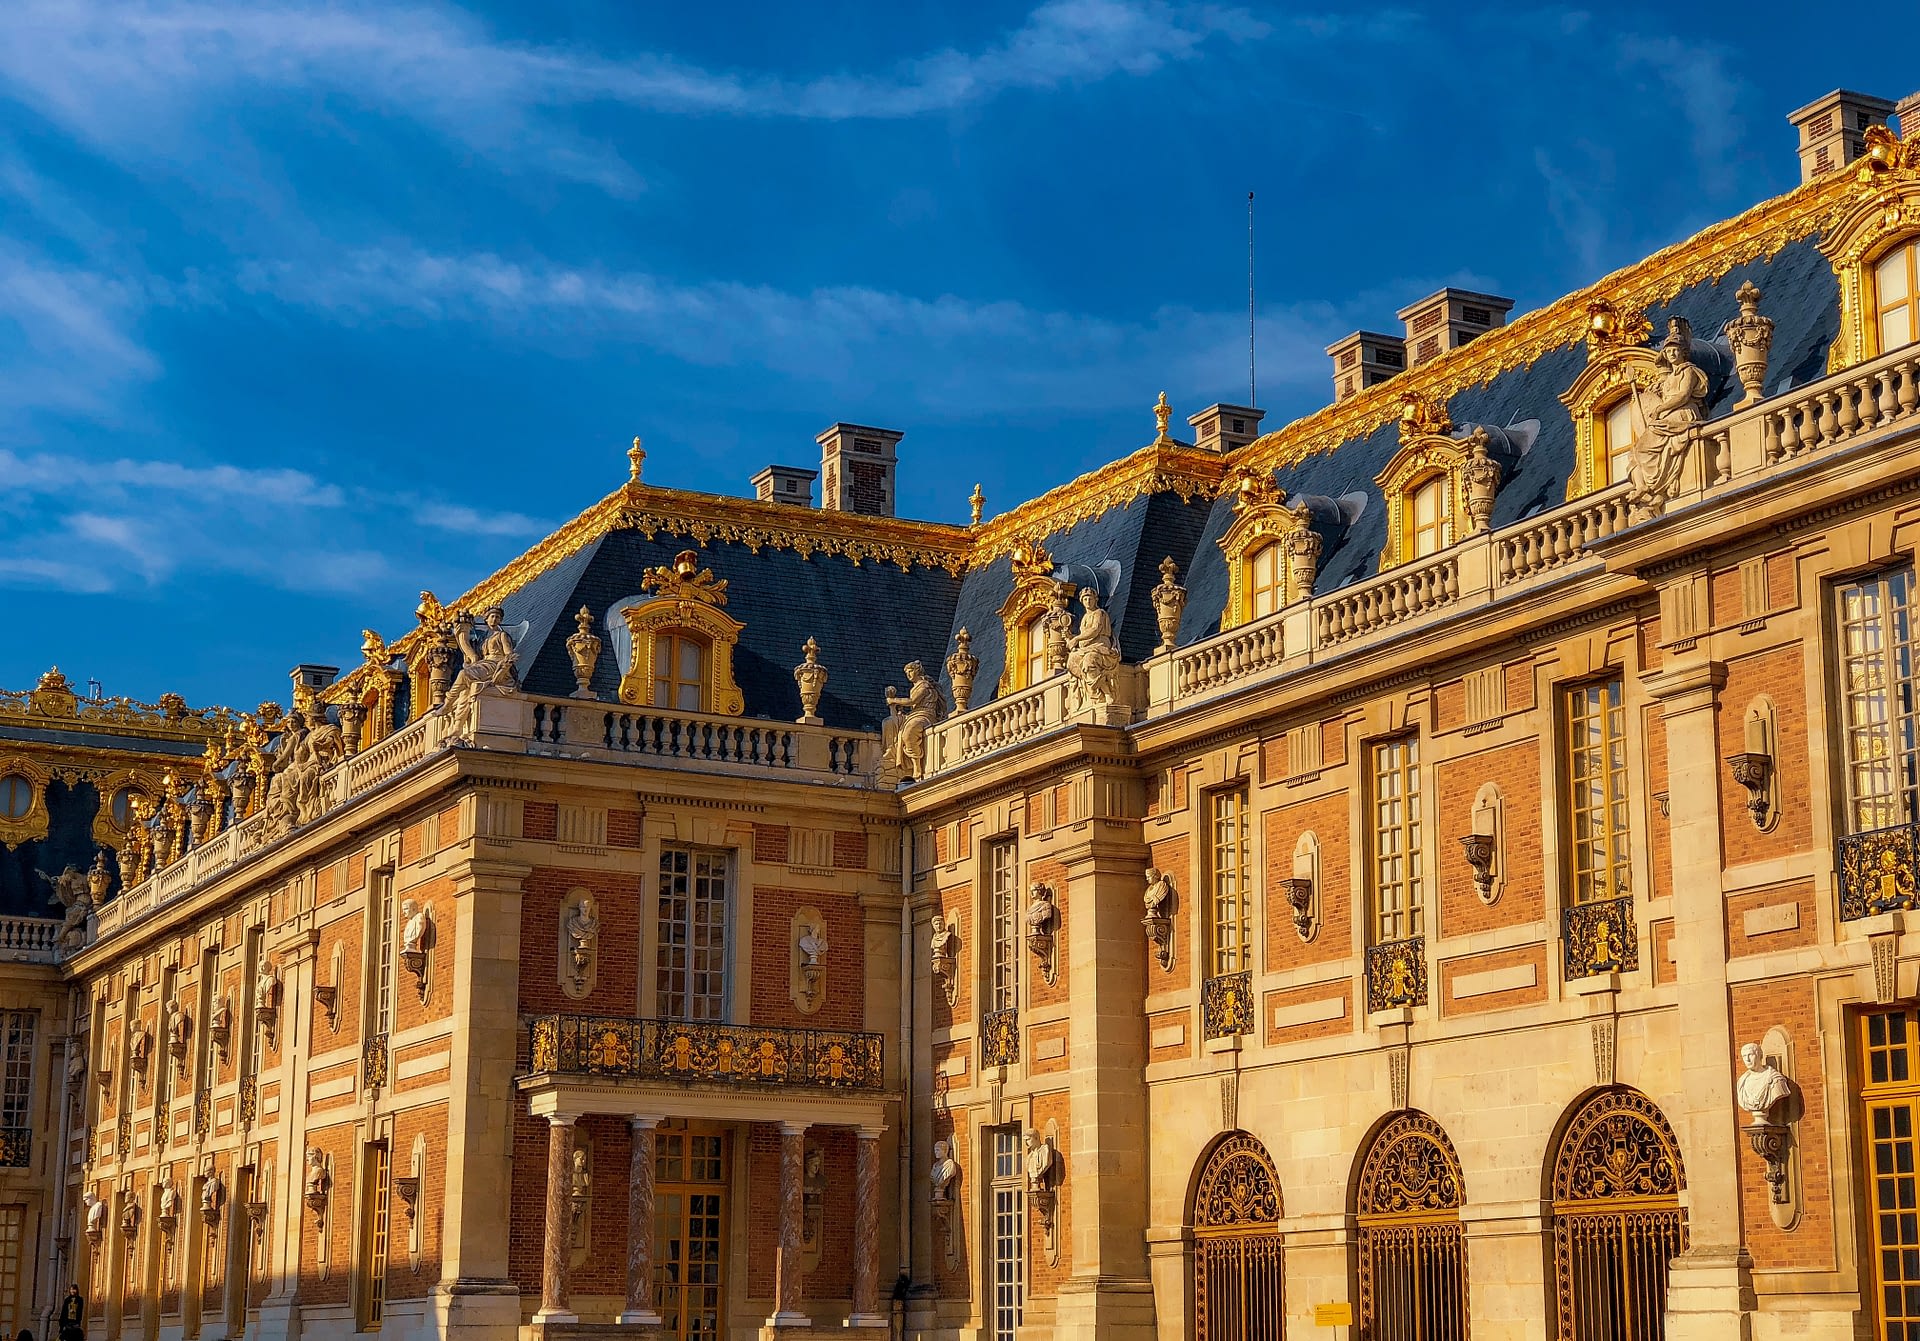 Le château de Versailles connaît une forte attractivité touristique